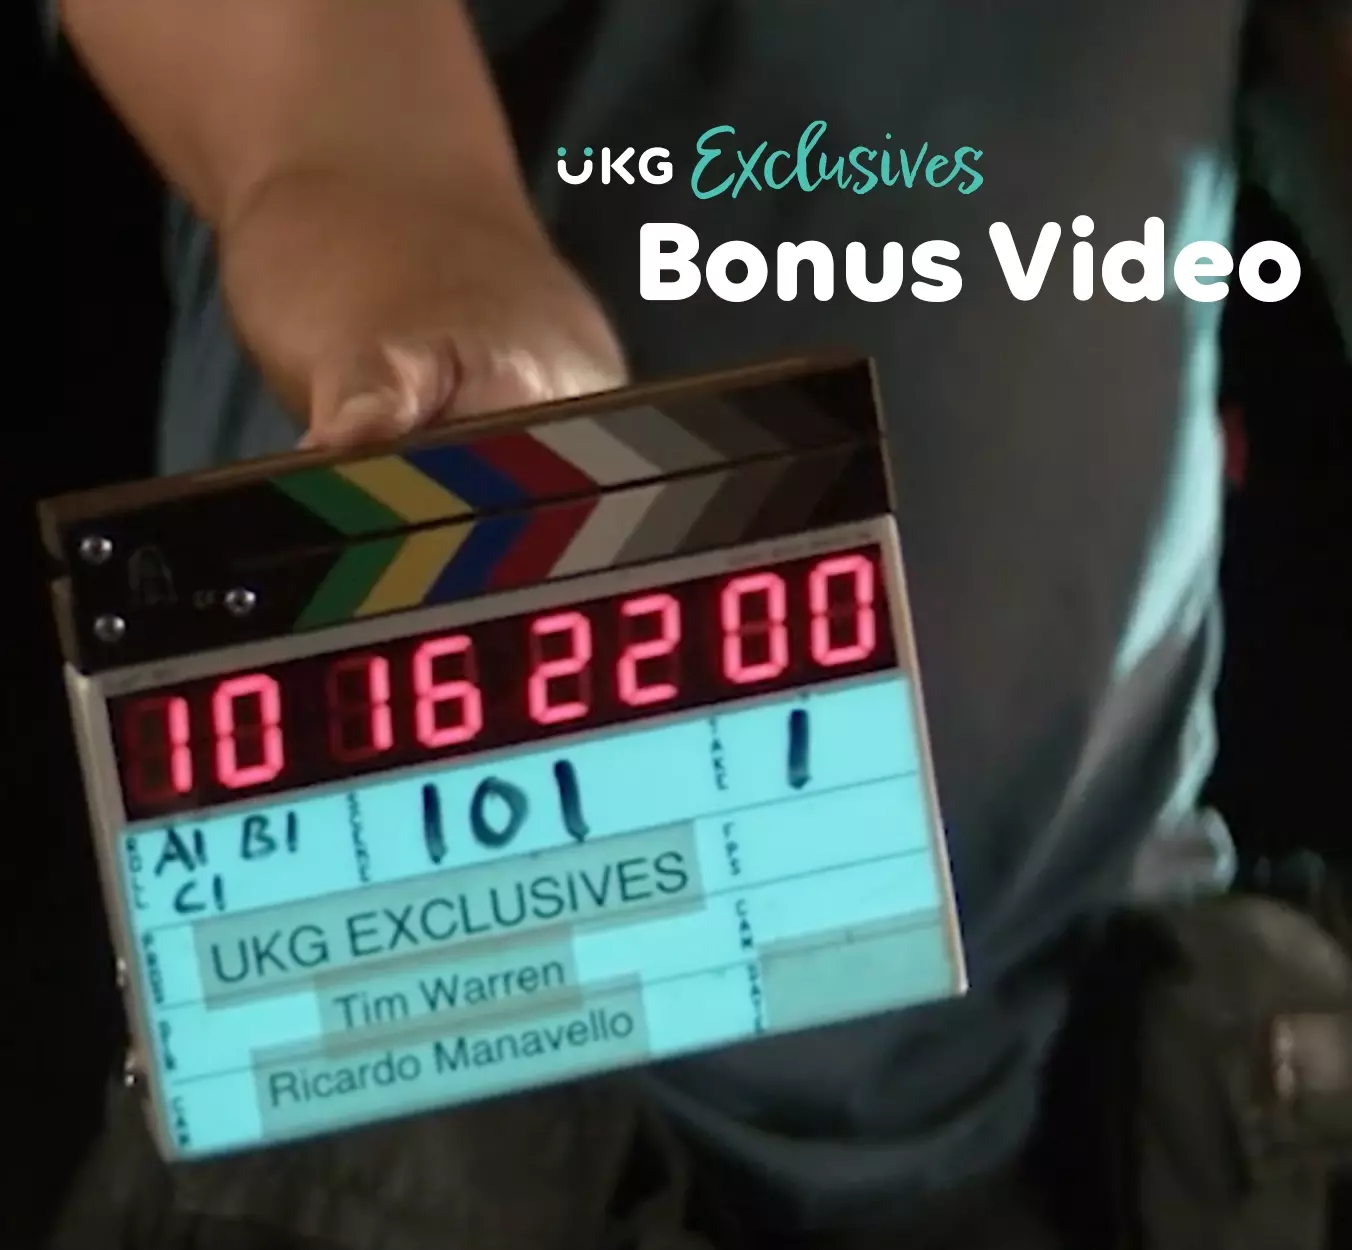 UKG Exclusives Bonus Video